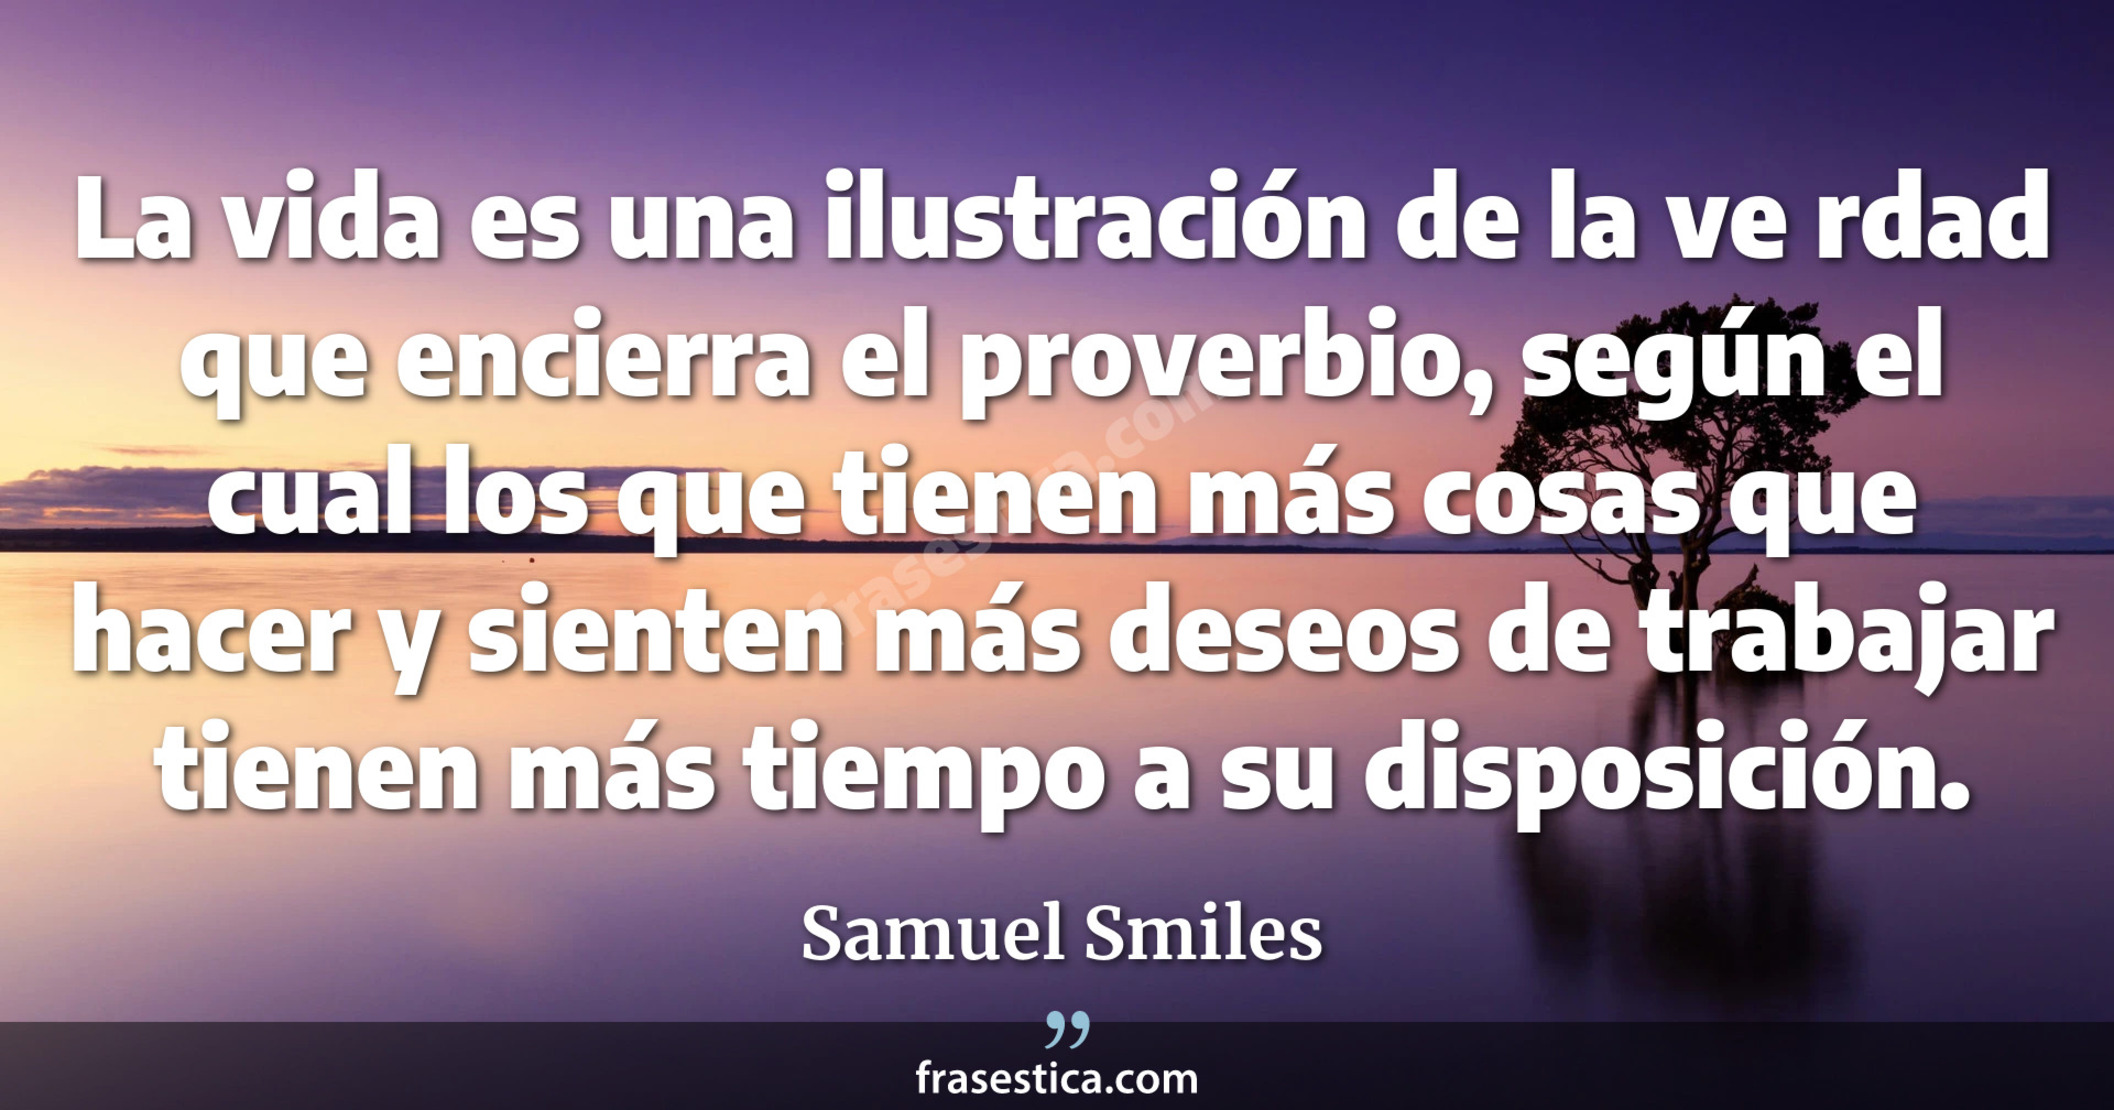 La vida es una ilustración de la ve rdad que encierra el proverbio, según el cual los que tienen más cosas que hacer y sienten más deseos de trabajar tienen más tiempo a su disposición. - Samuel Smiles